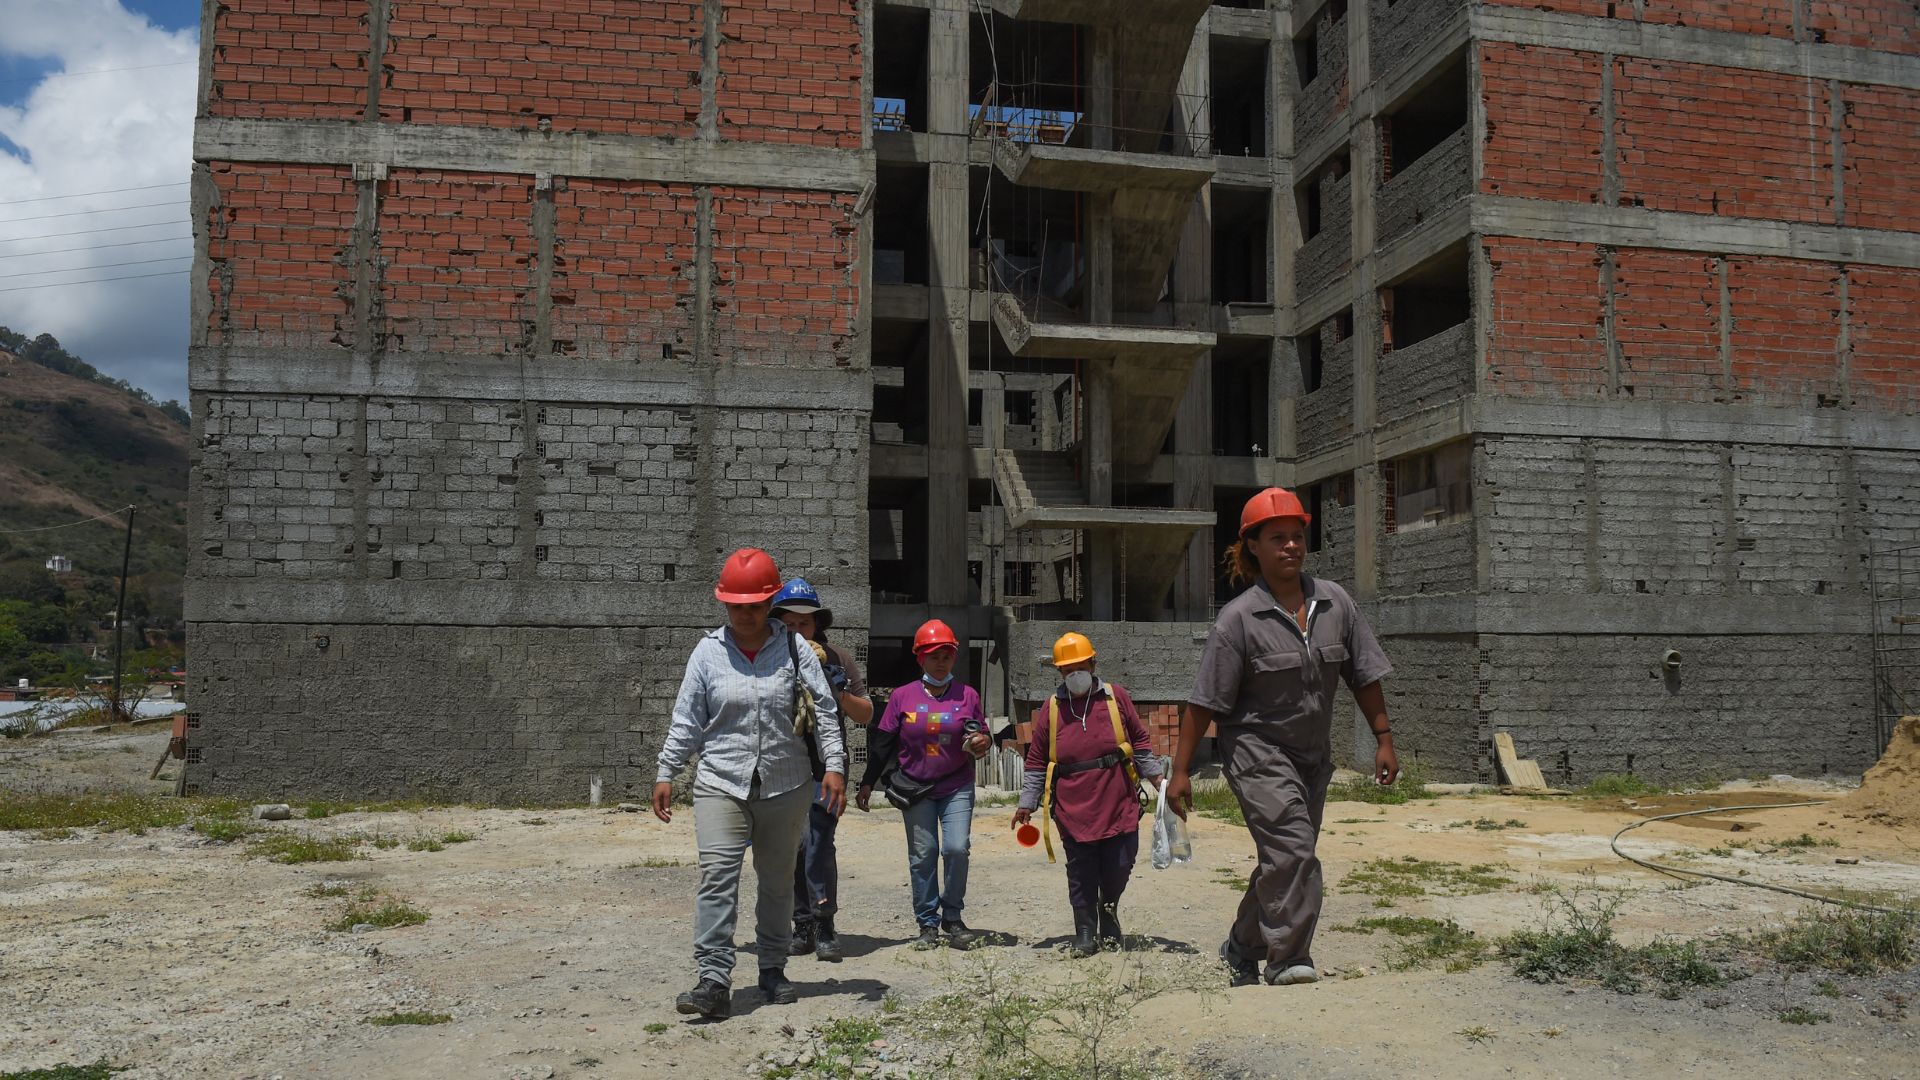 De enfermeras a maestras: colectivo feminista construye viviendas en Caracas